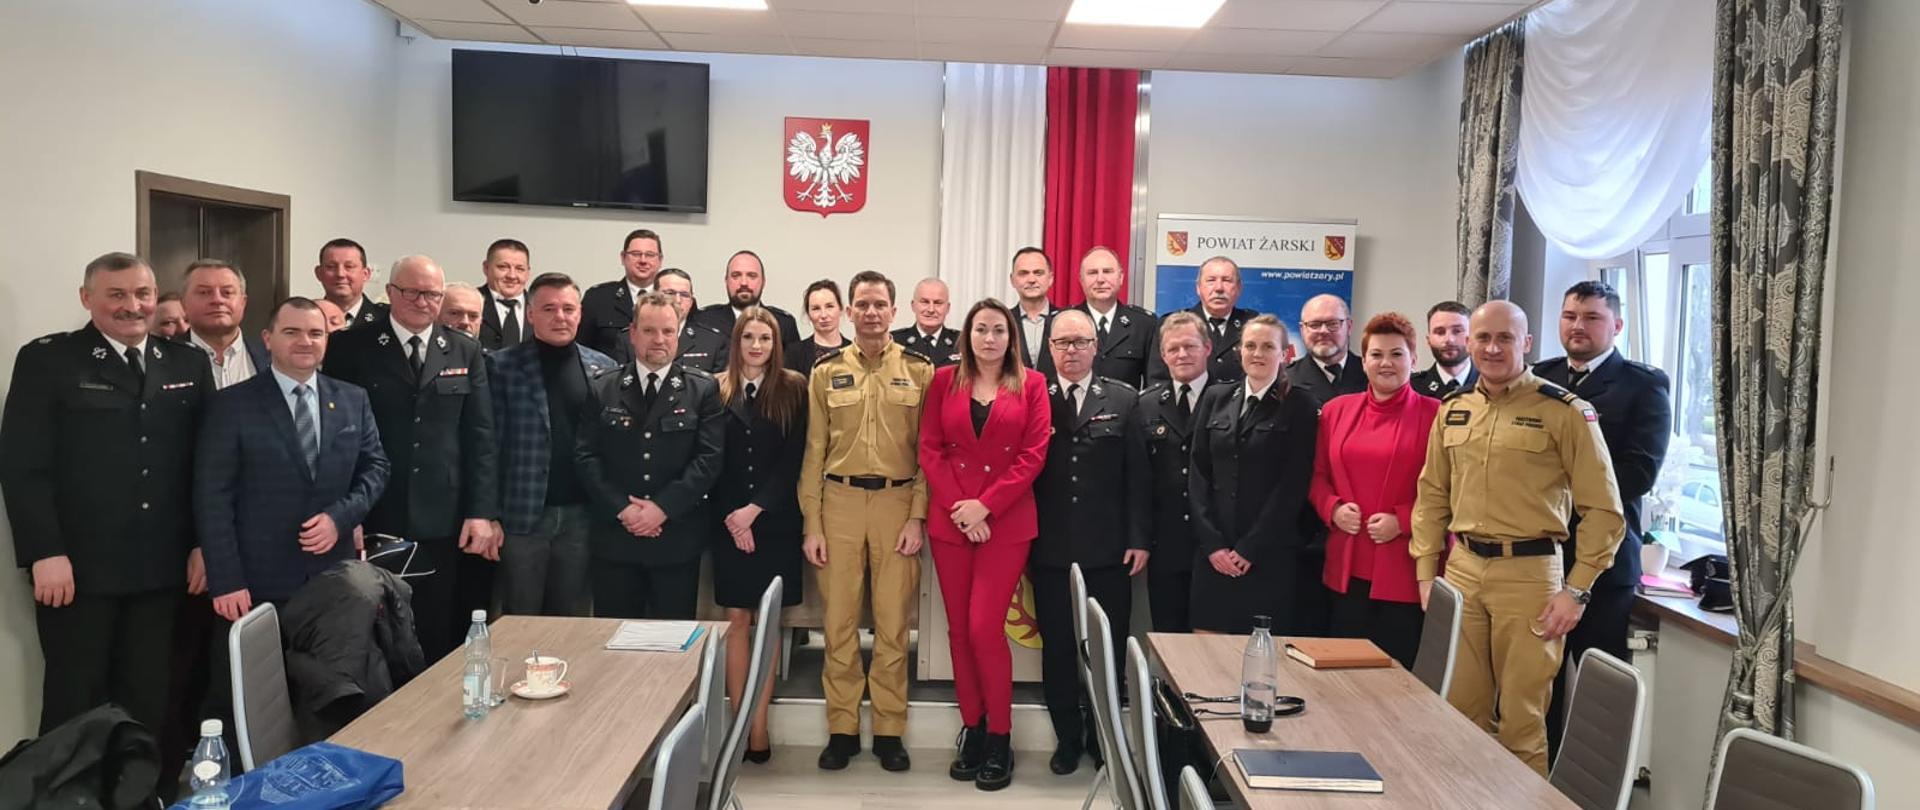 Na zdjęciu grupowym znajdują się wszyscy uczestnicy spotkania, strażacy PSP i OSP oraz przedstawiciele władz samorządowych powiatu żarskiego.